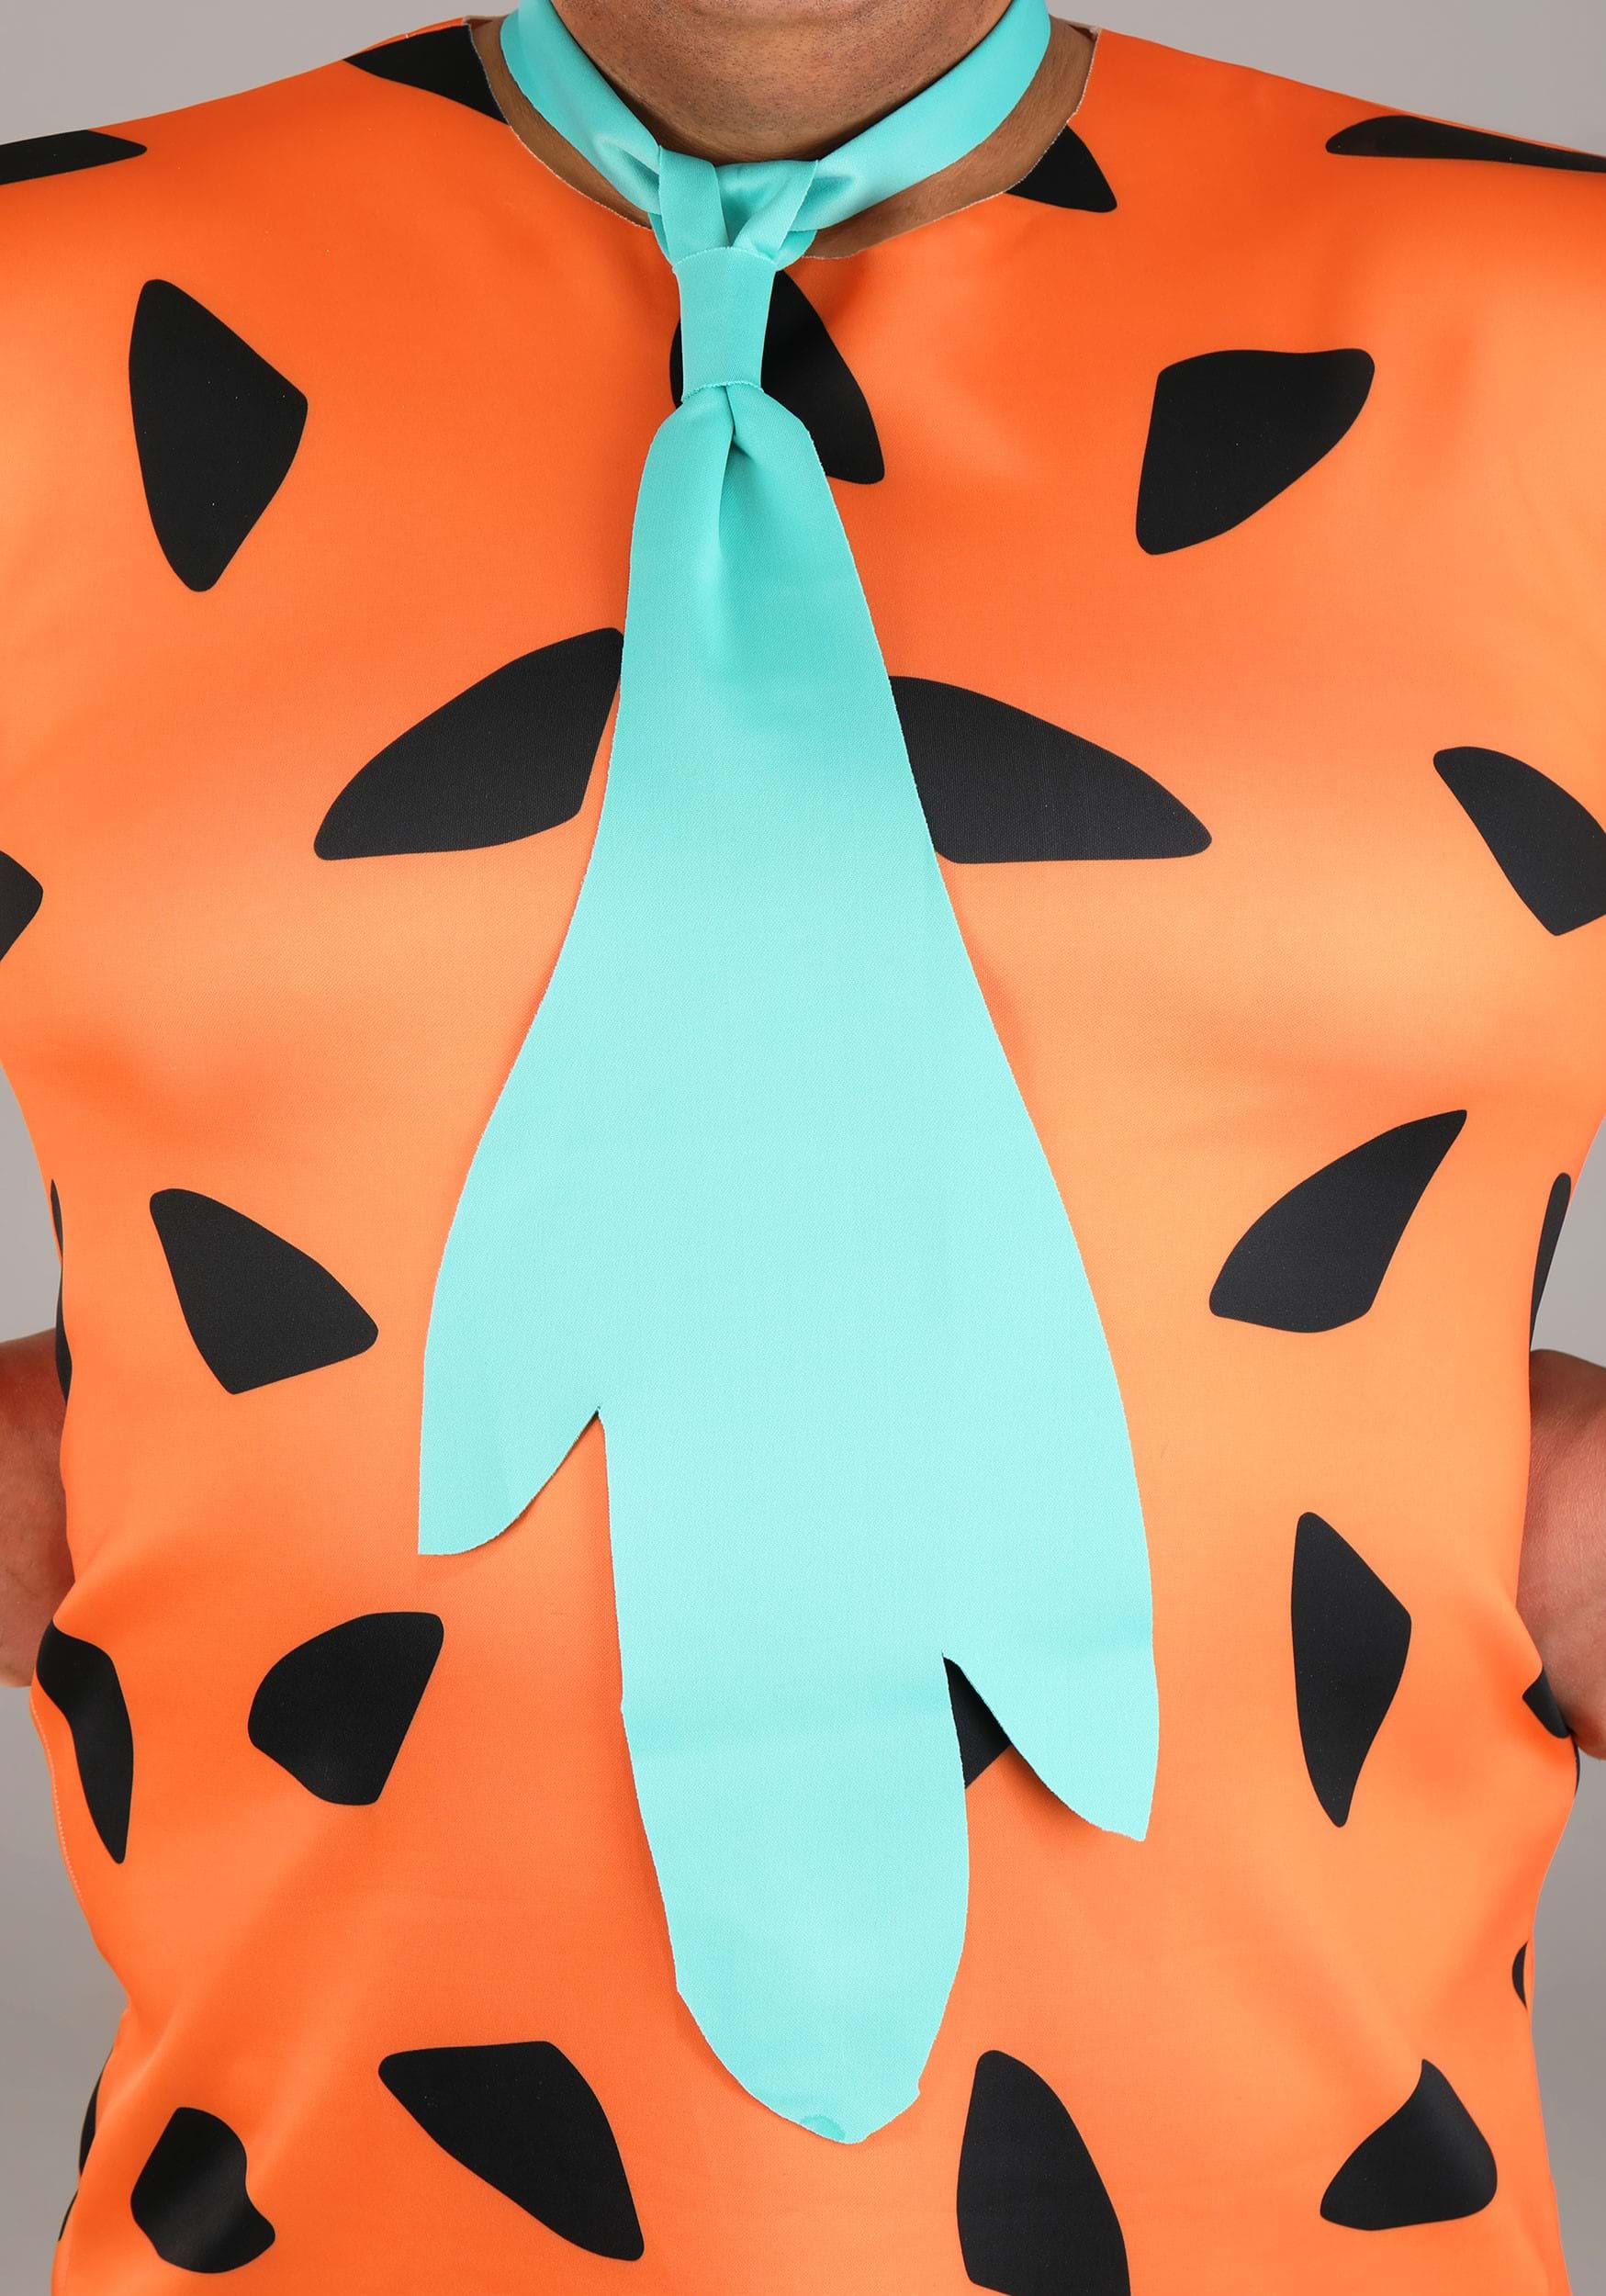 Men's Plus Size Flintstones Fred Flintstone Fancy Dress Costume